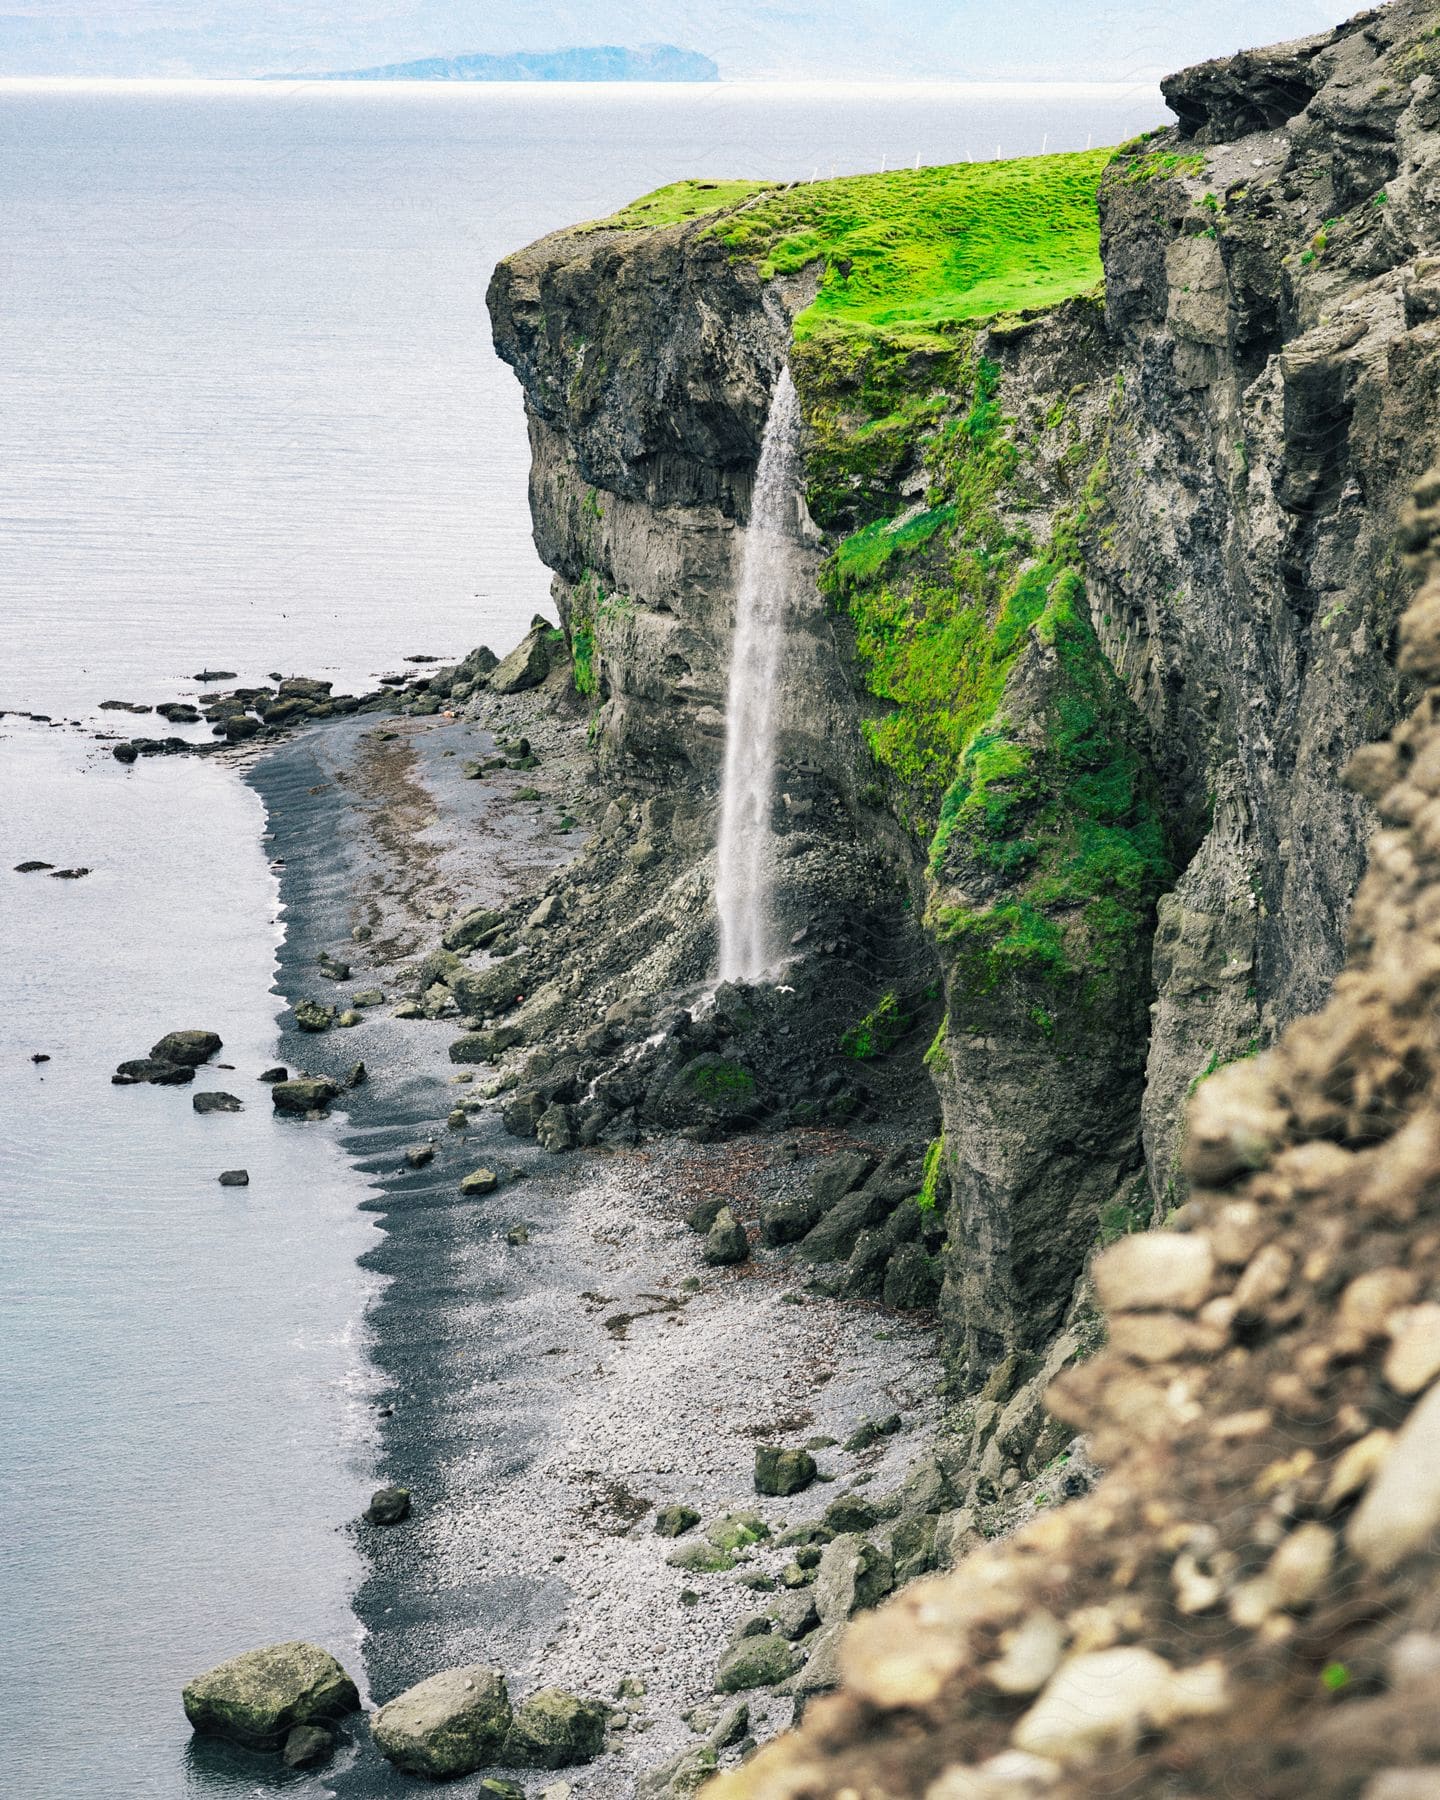 an island with a cliff causing a water fall near the calm ocean